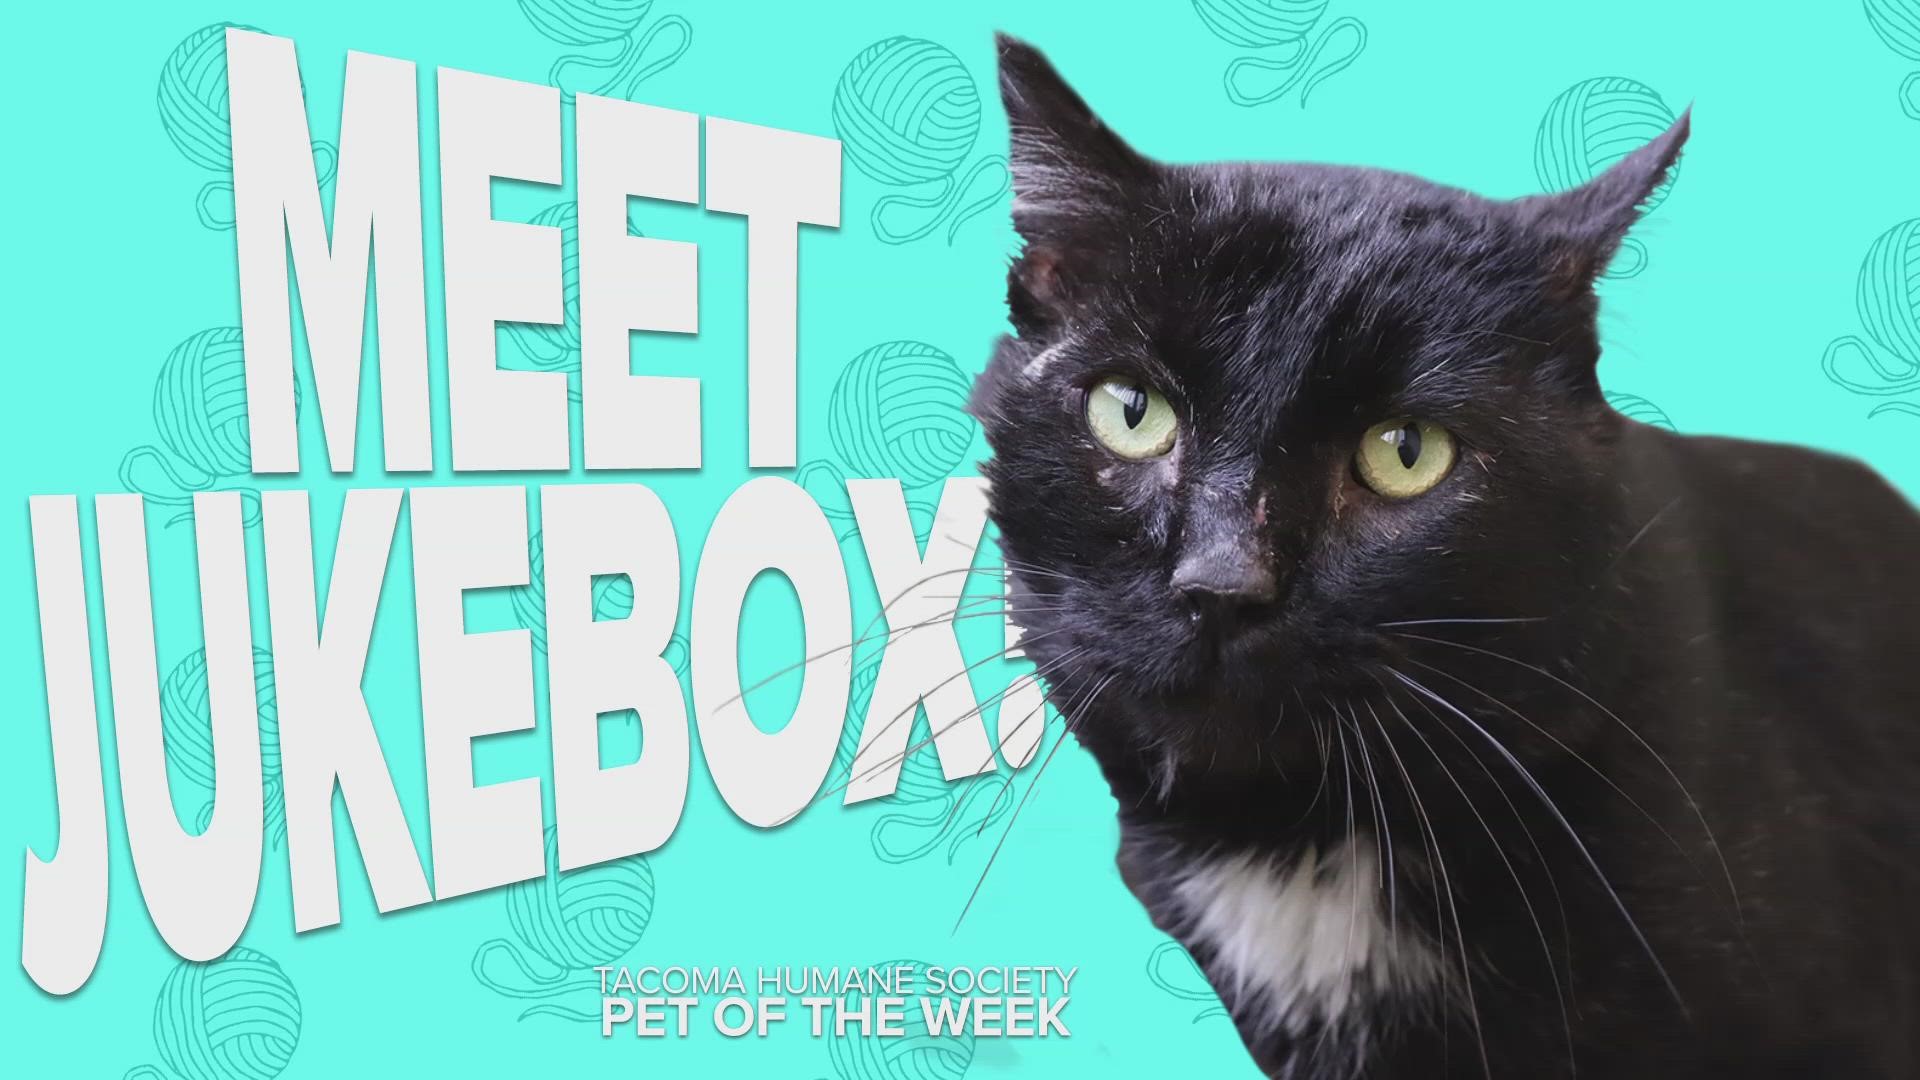 This week's featured adoptable pet of the week is Jukebox!